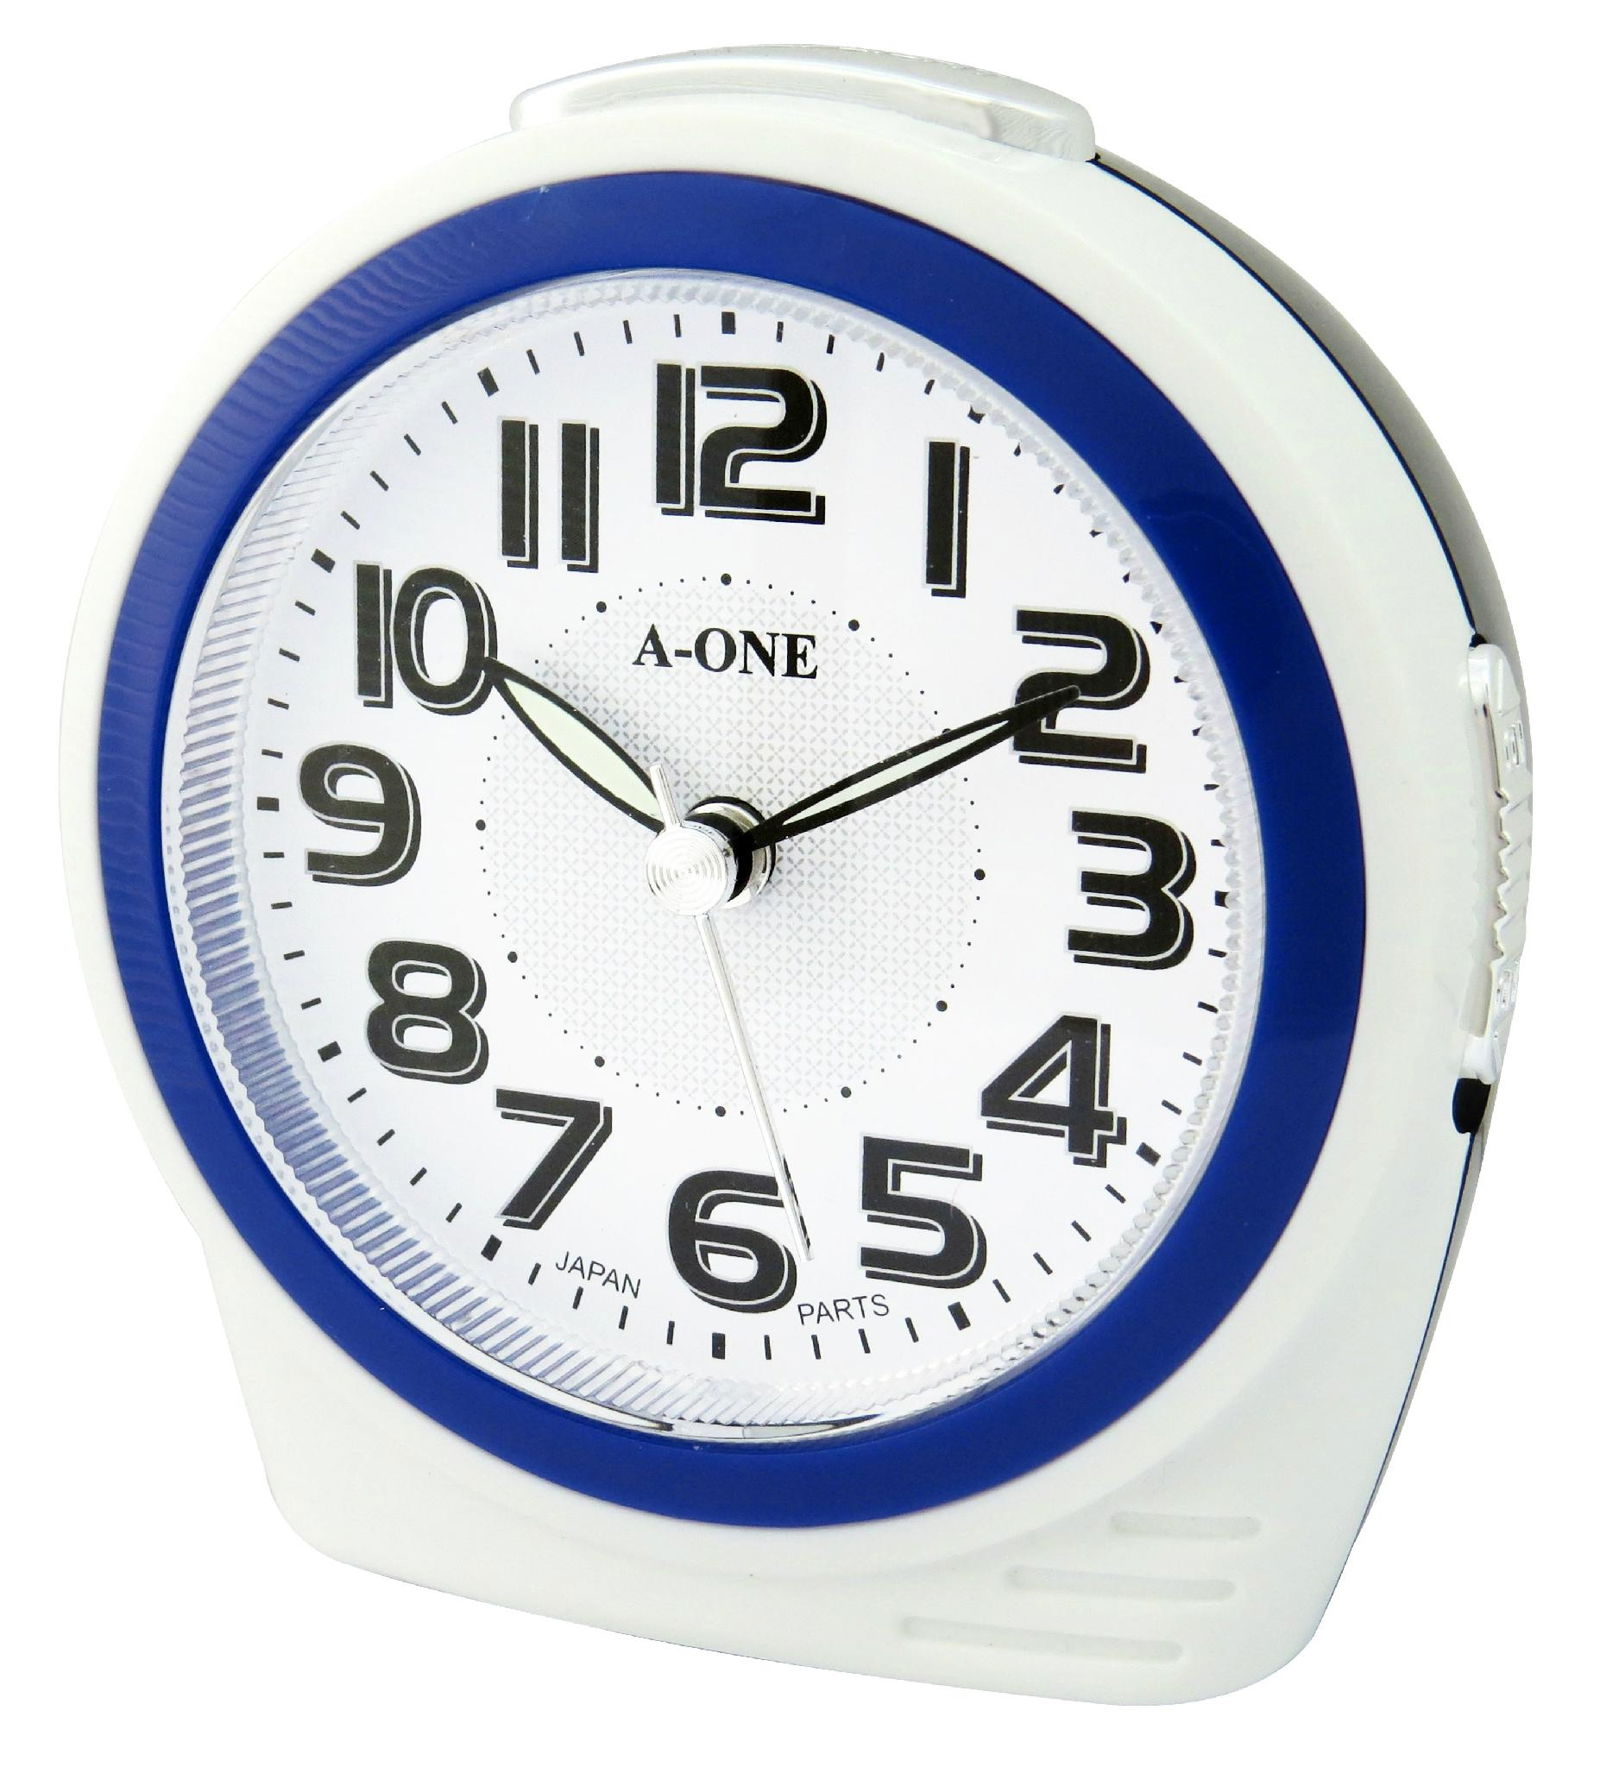 TG-0164 Colorful Bibi Ring Alarm Clock 2